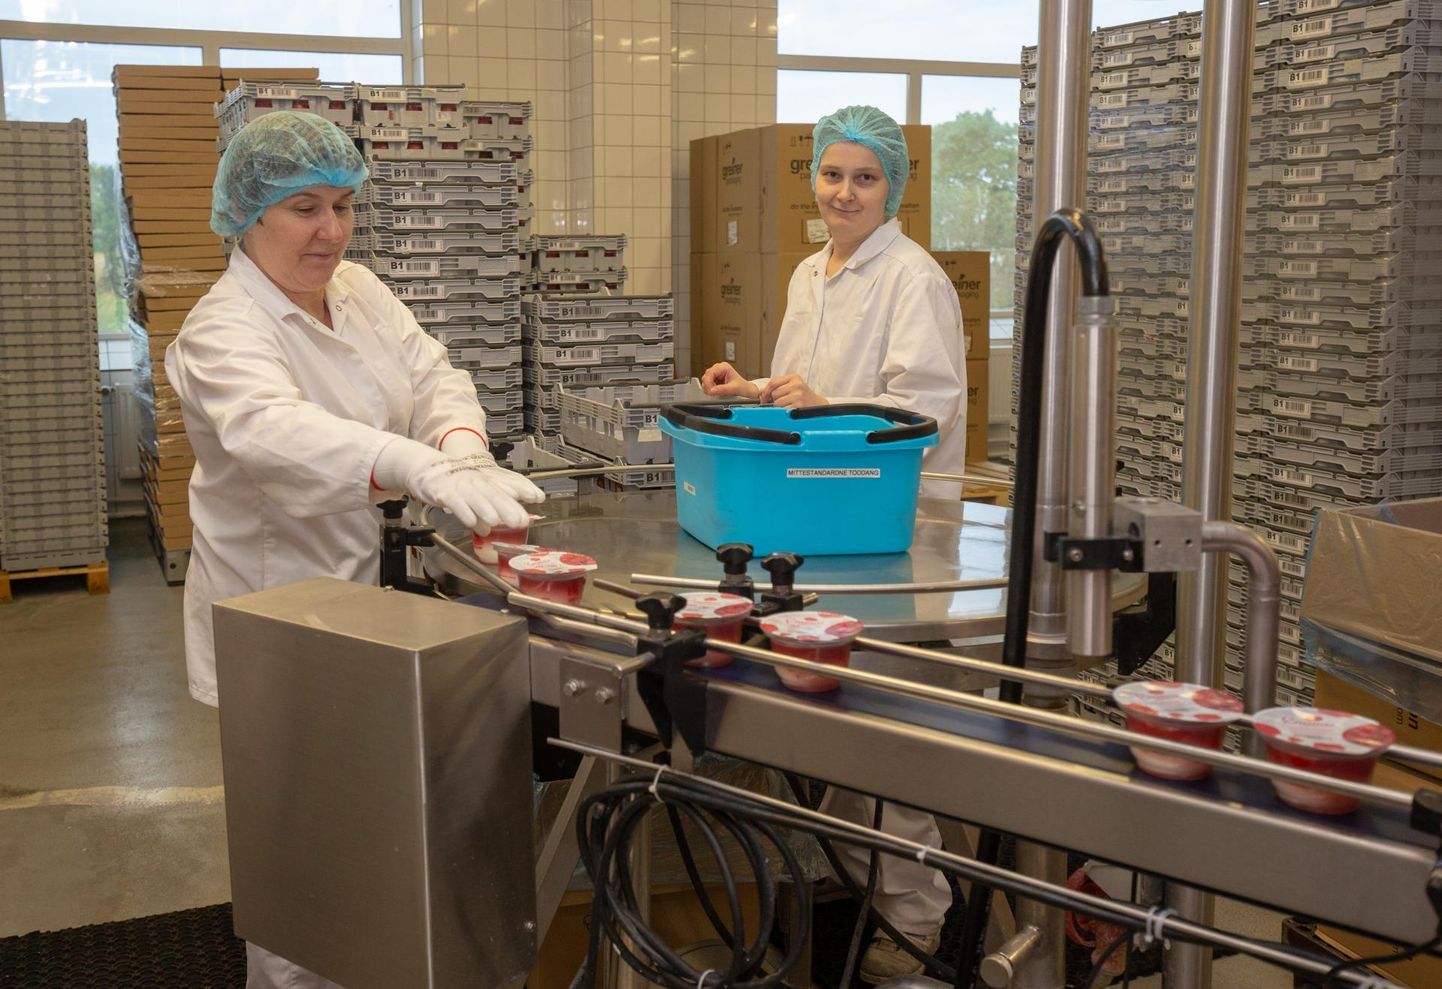 Tere piimatööstuse Viljandi tehases valmivad kohukesed, kohupiimakreemid ja sulatatud juustud.